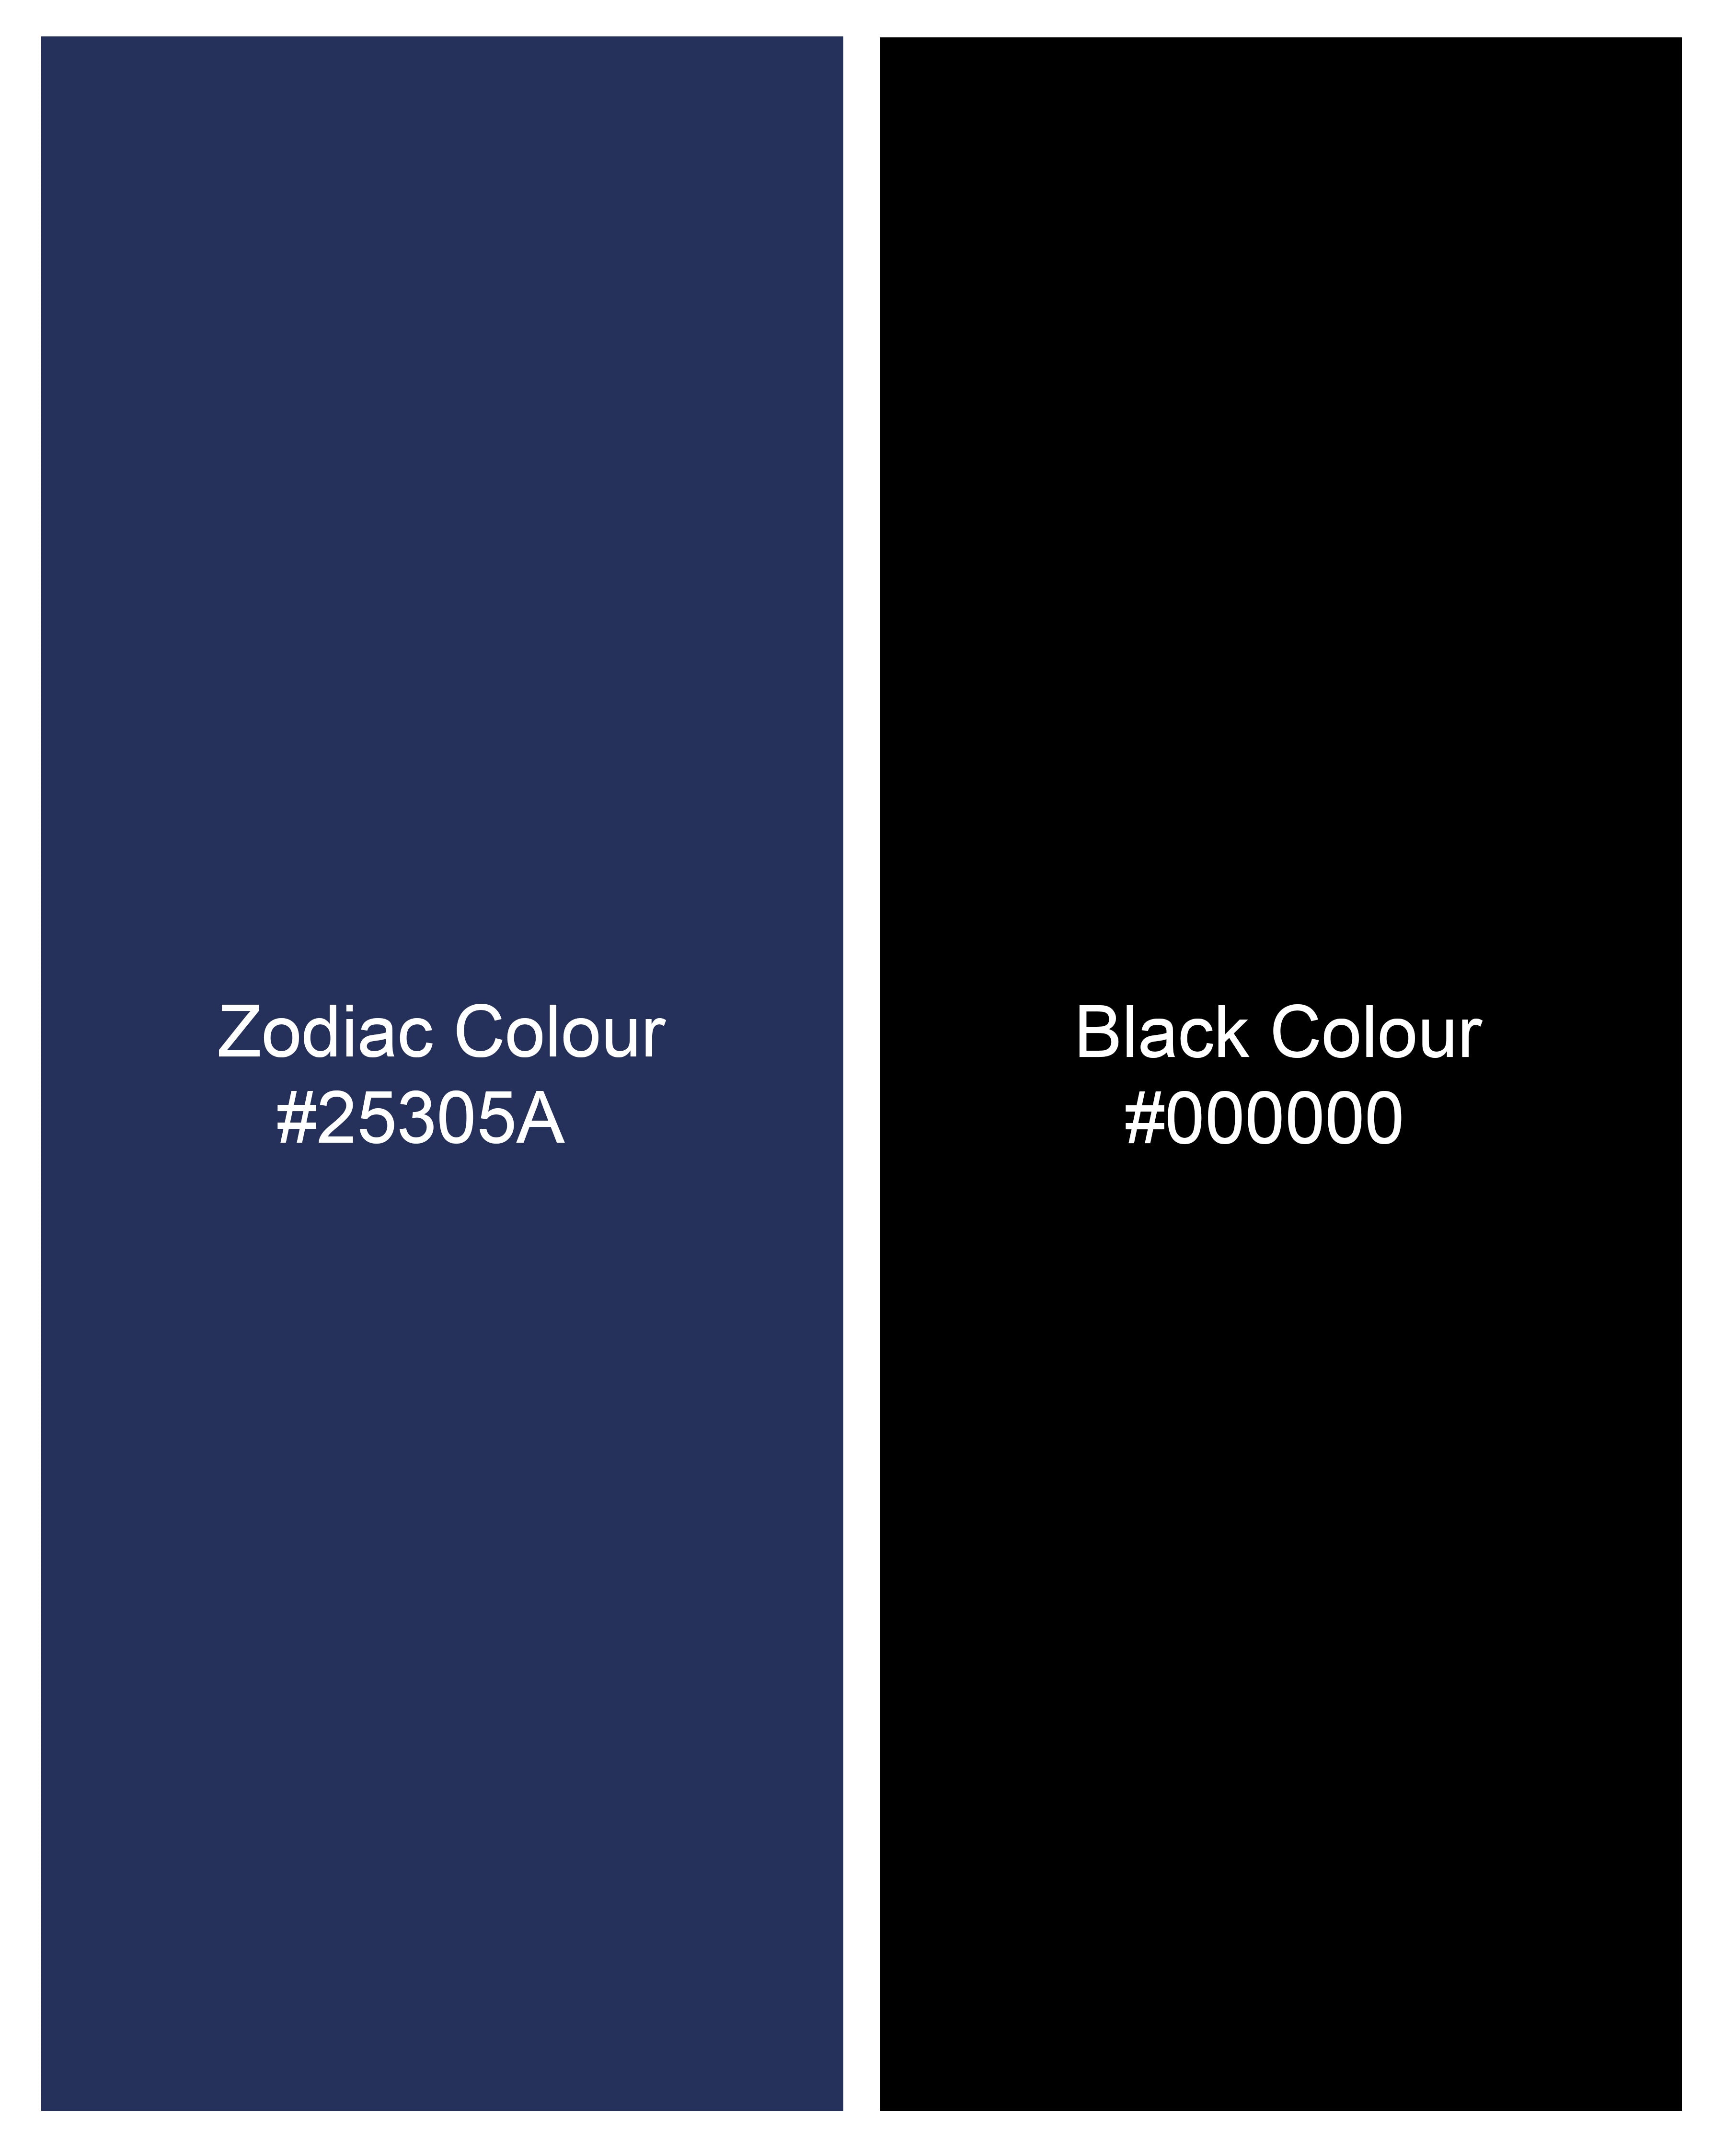 Zodiac Blue and Black Checkered Herringbone Shirt 9345-BD-BLK-38, 9345-BD-BLK-H-38, 9345-BD-BLK-39, 9345-BD-BLK-H-39, 9345-BD-BLK-40, 9345-BD-BLK-H-40, 9345-BD-BLK-42, 9345-BD-BLK-H-42, 9345-BD-BLK-44, 9345-BD-BLK-H-44, 9345-BD-BLK-46, 9345-BD-BLK-H-46, 9345-BD-BLK-48, 9345-BD-BLK-H-48, 9345-BD-BLK-50, 9345-BD-BLK-H-50, 9345-BD-BLK-52, 9345-BD-BLK-H-52